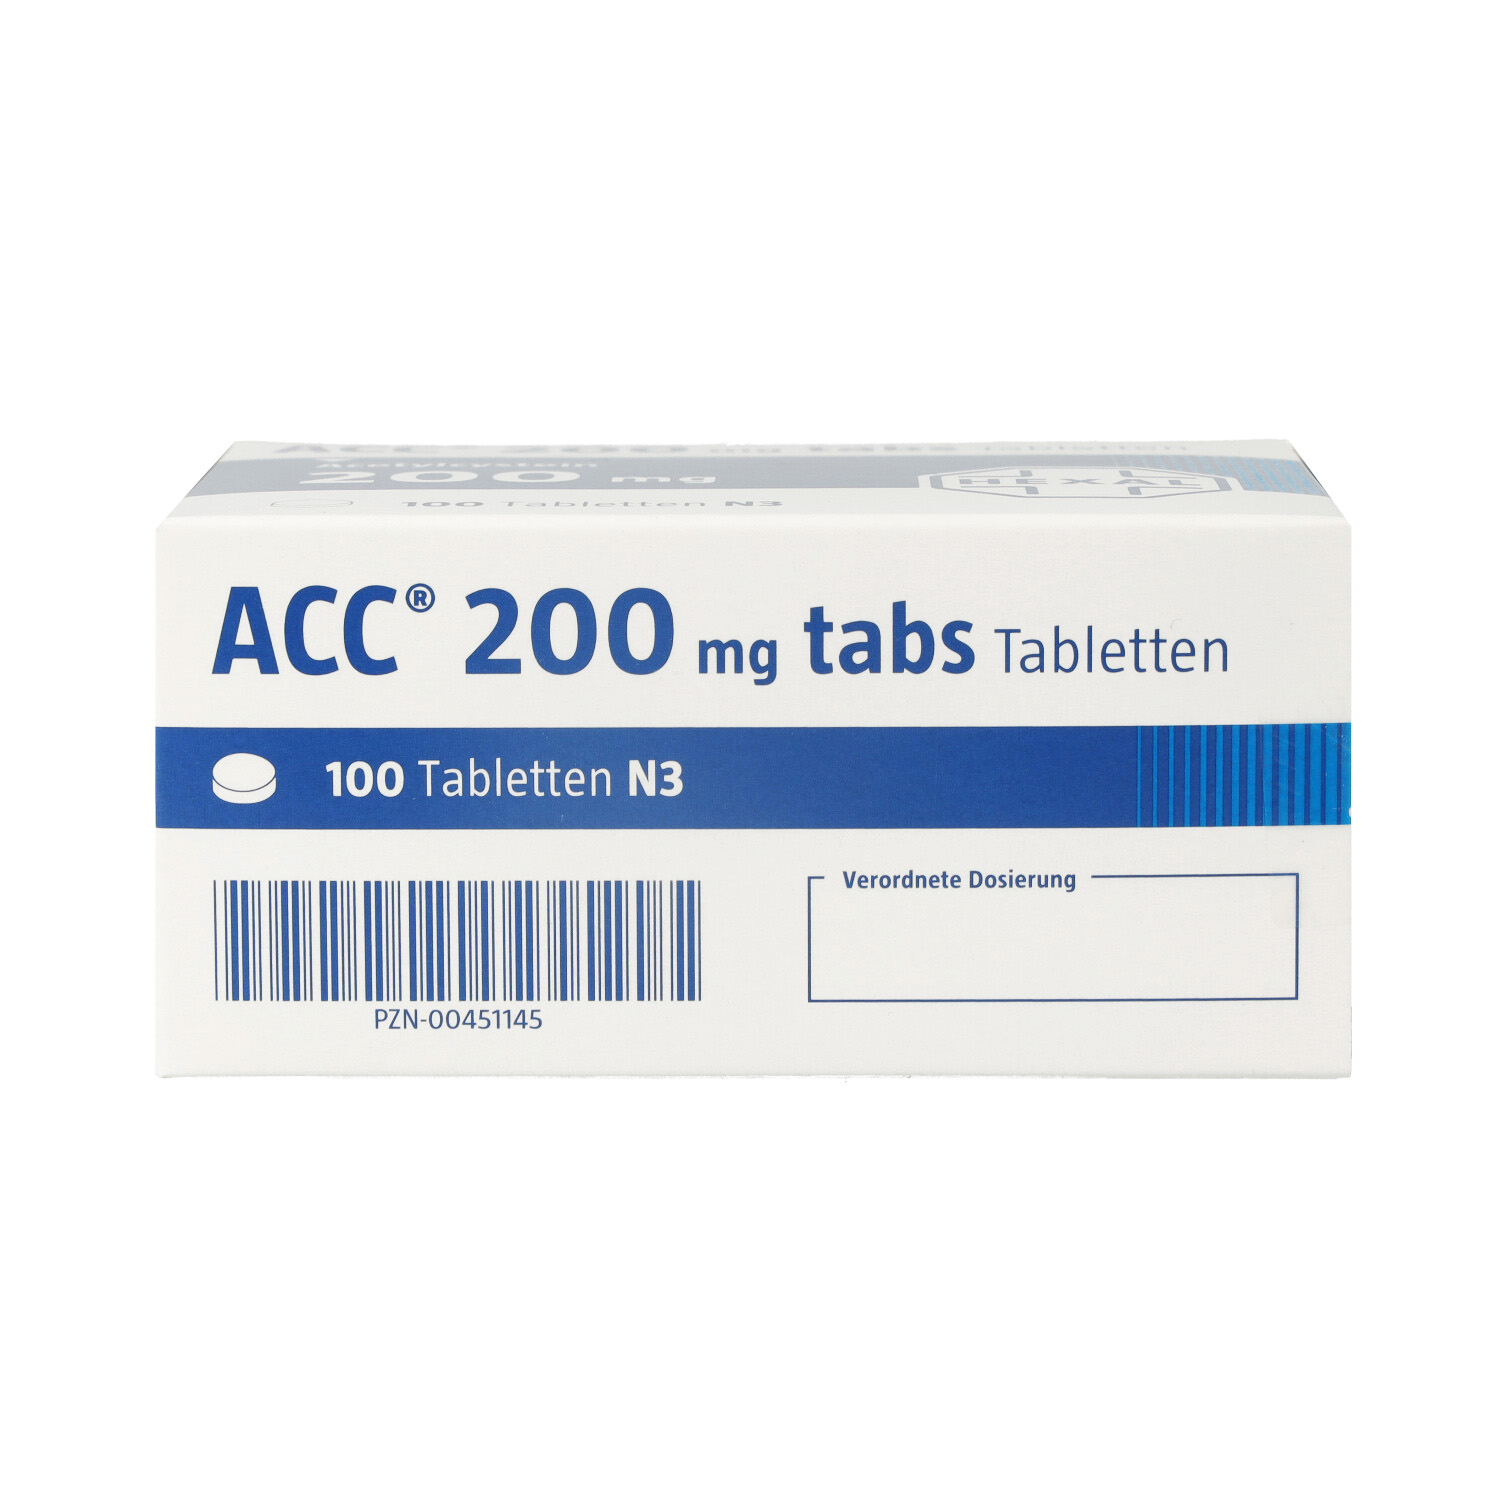 ACC 200 tabs Tabletten